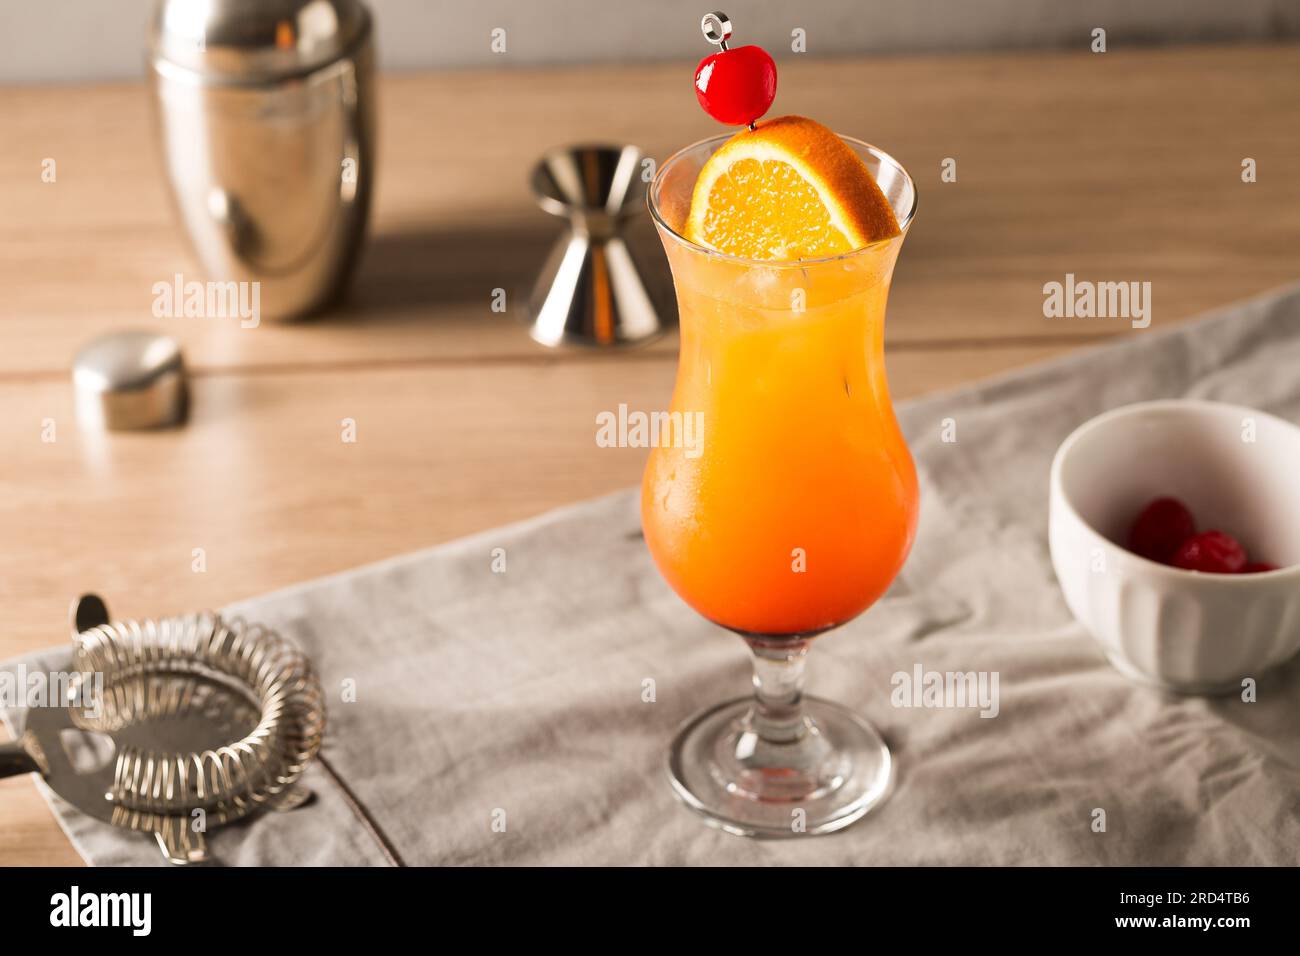 Tequila Sunrise cocktail rafraîchissant classique tequila, jus d'orange frais, jus de citron vert frais, liqueur d'orange et grenadine Banque D'Images